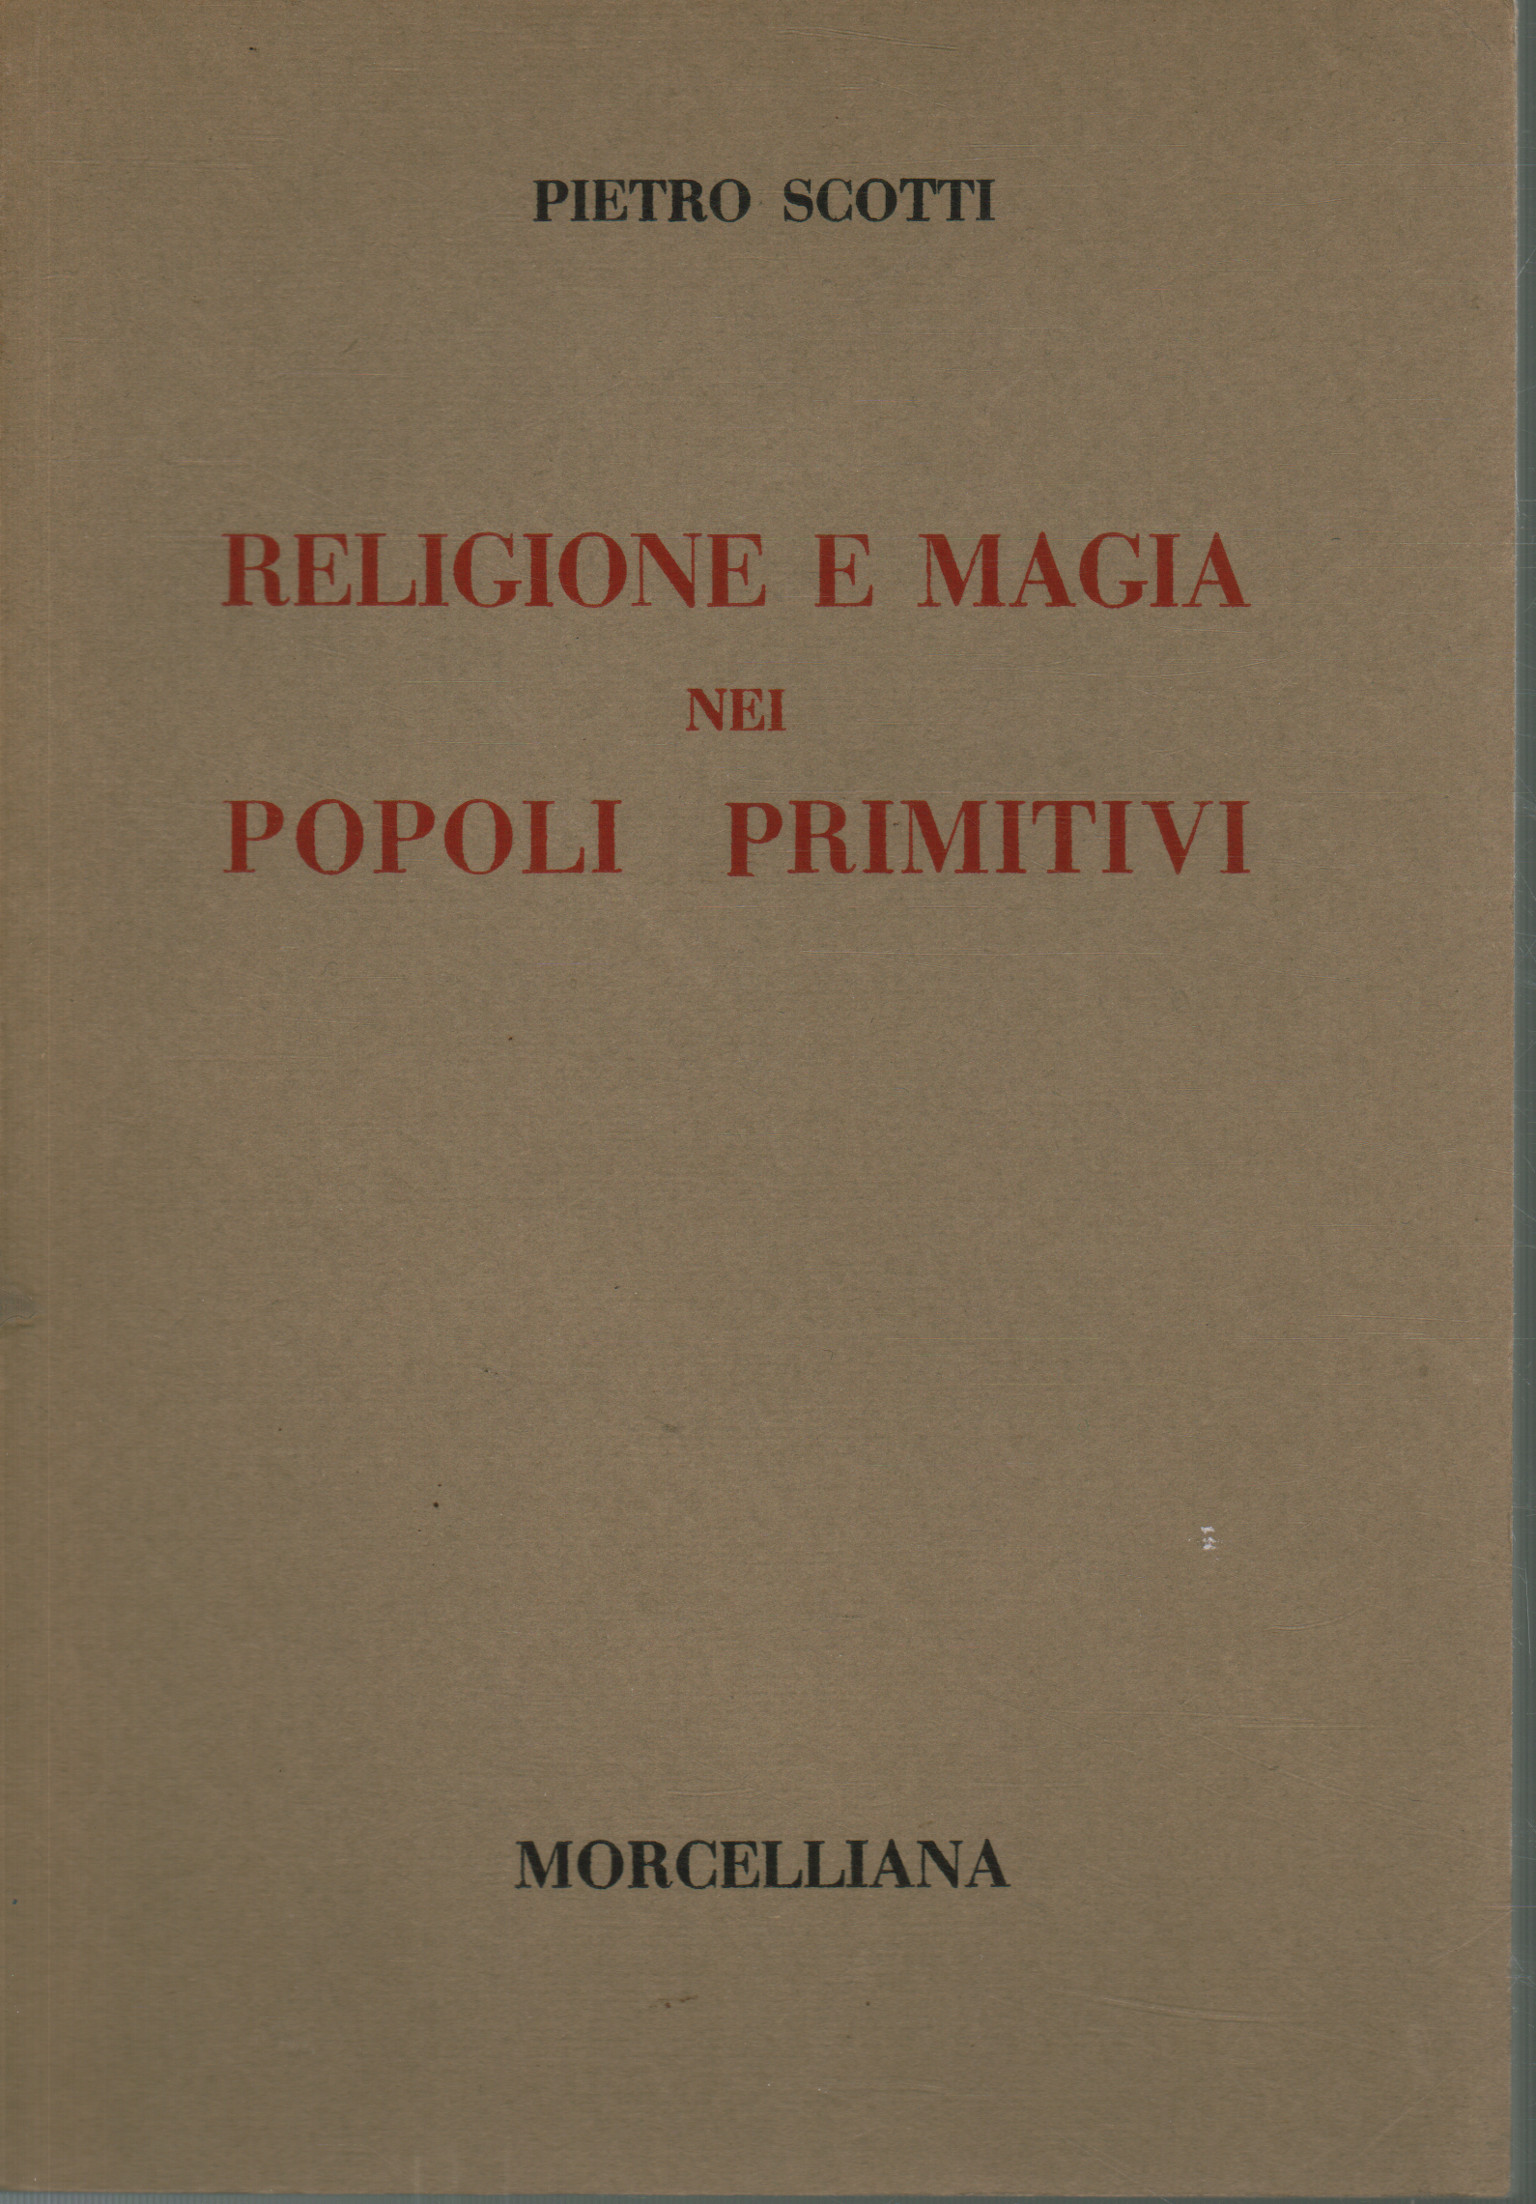 Religione e magia nei popoli primitivi, Pietro Scotti